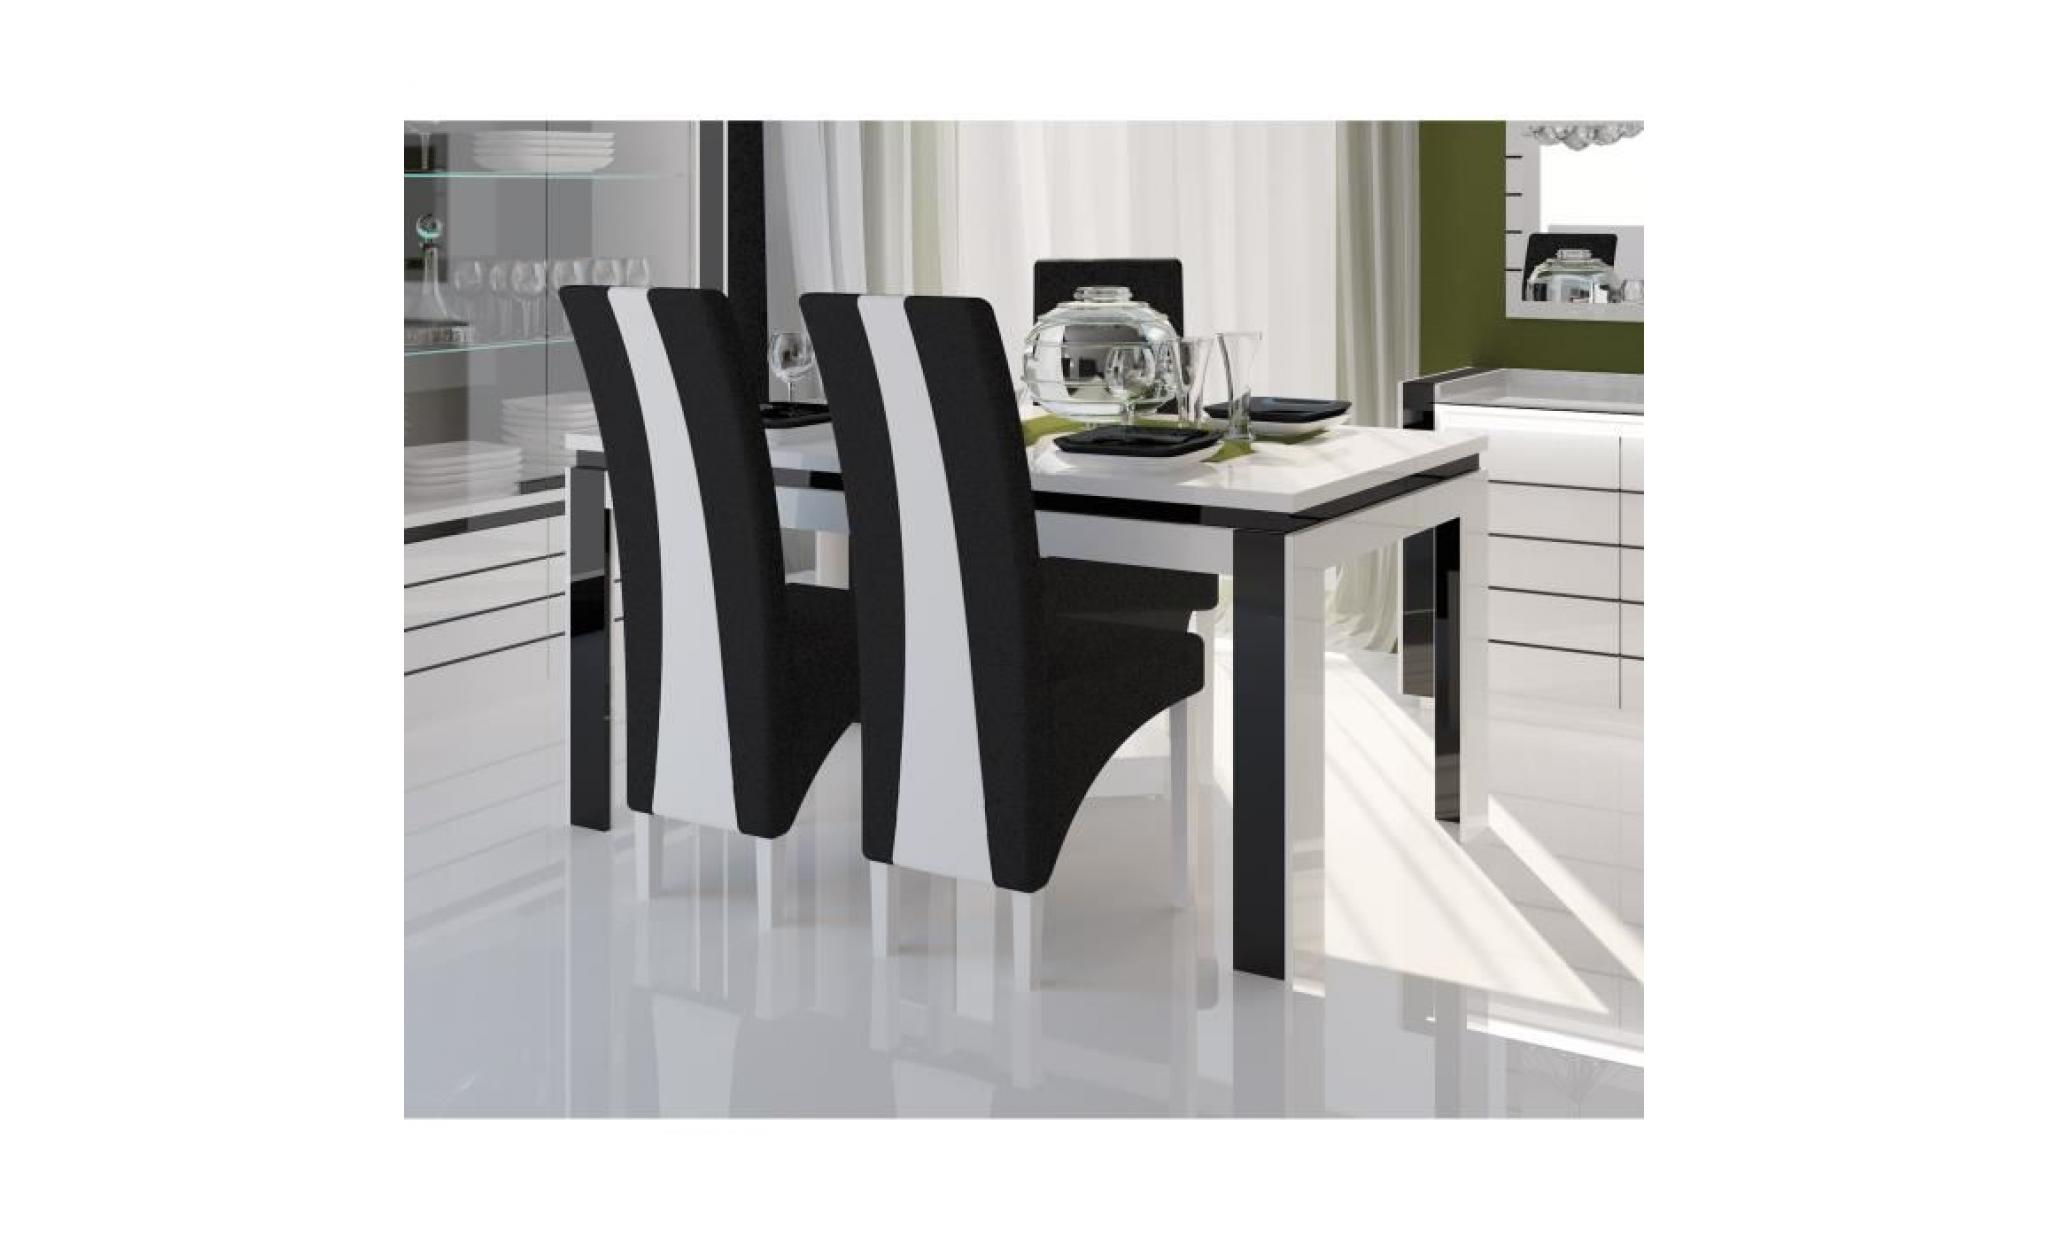 price factory   salle à manger complète lina blanche et noire. table 180 cm + buffet + 3 x miroirs + vaisselier (led) + 4 chaises pas cher